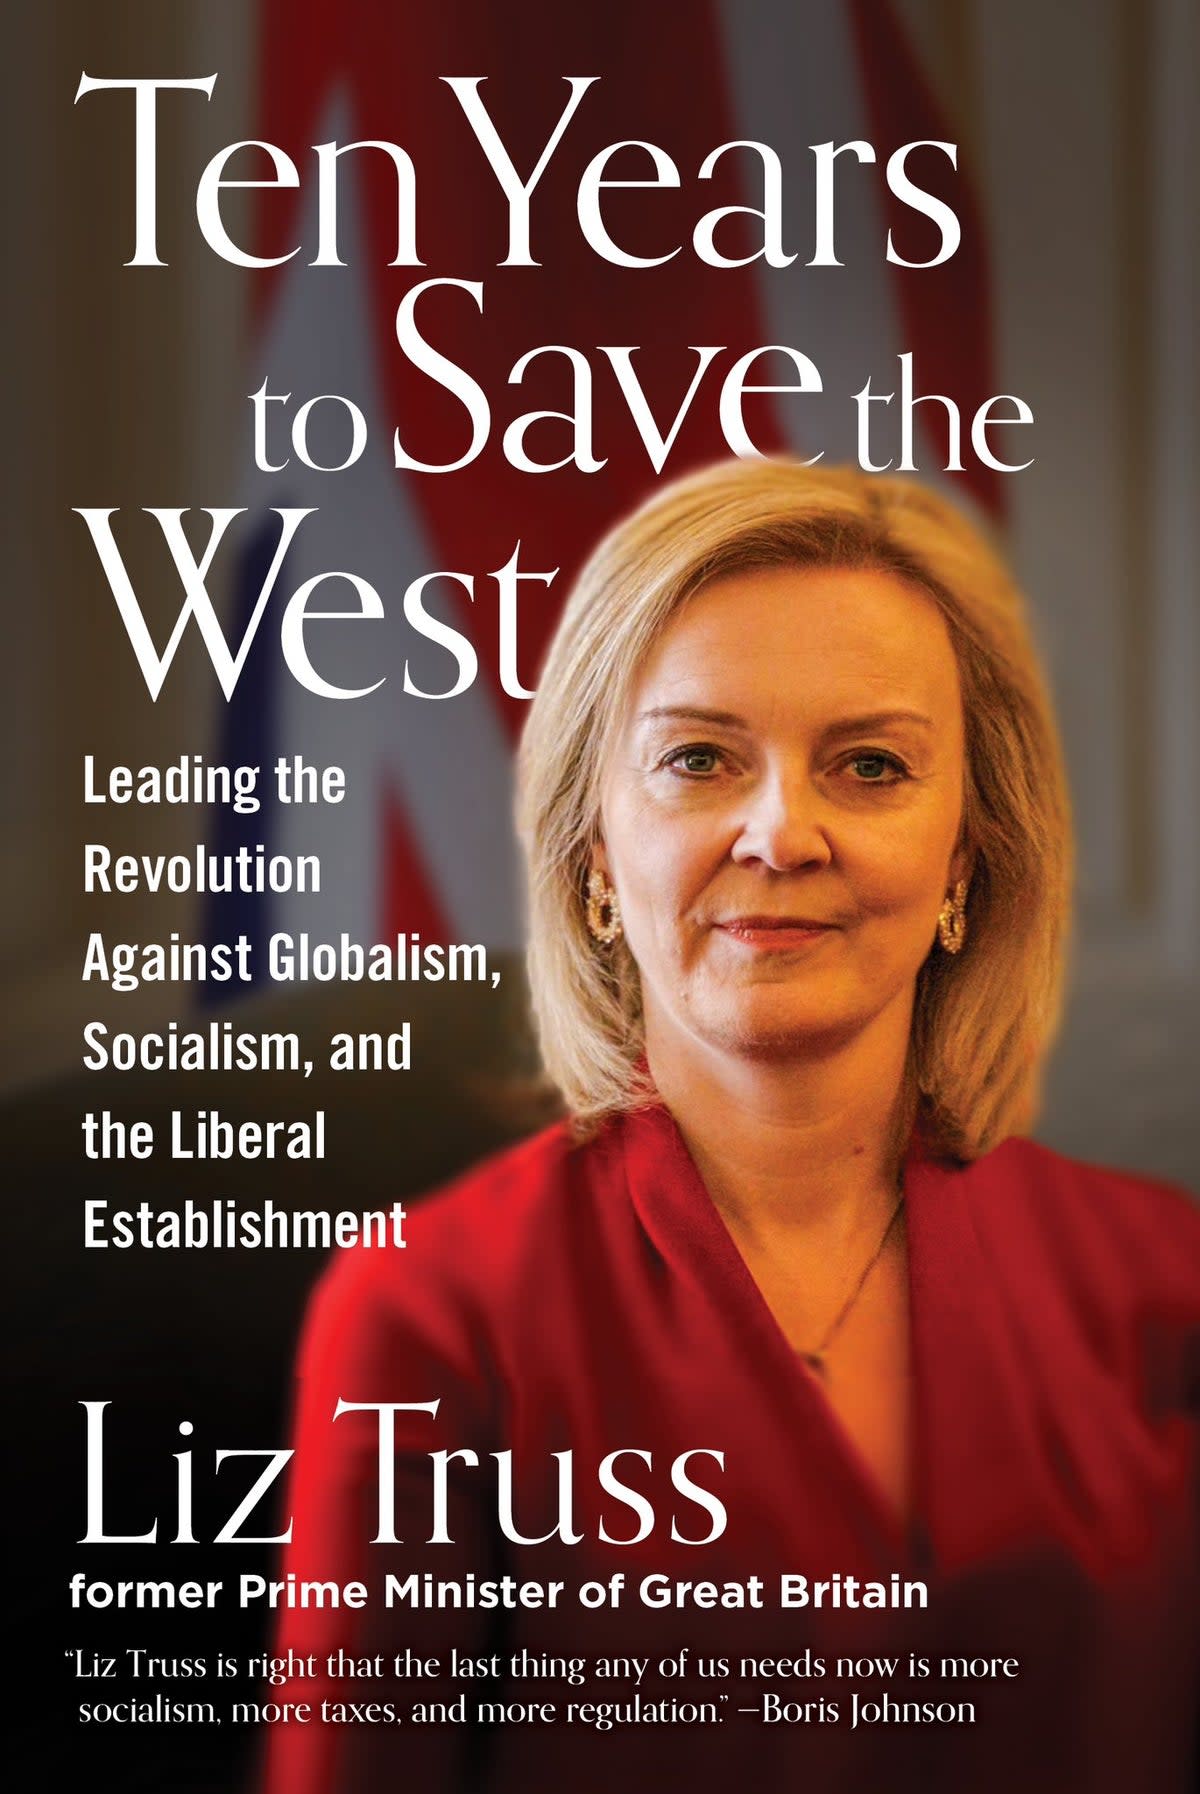 Liz Truss’s new book